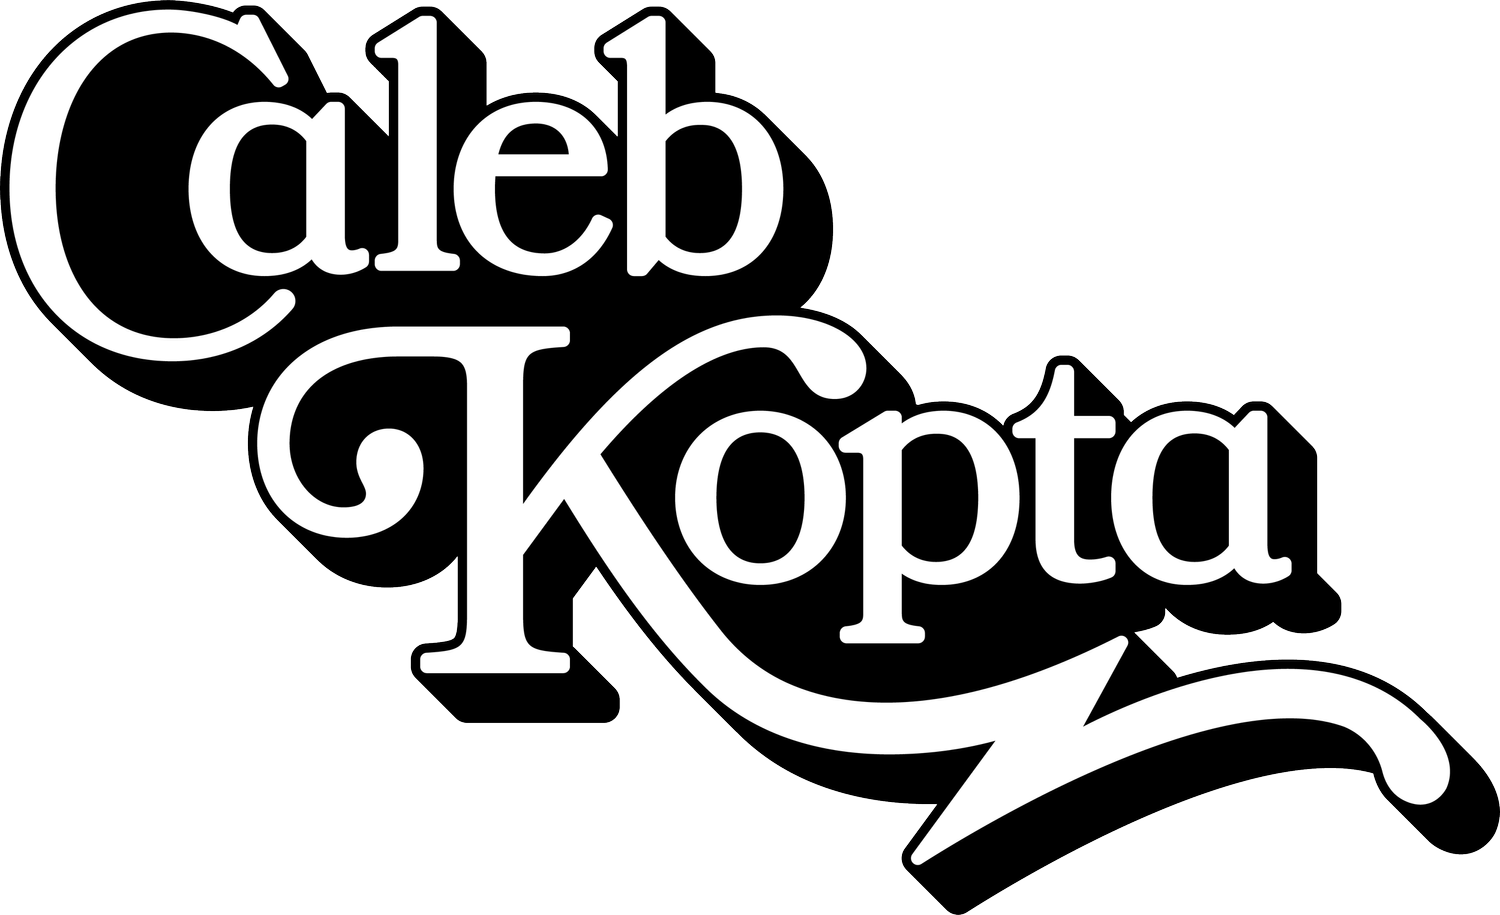 Caleb Kopta